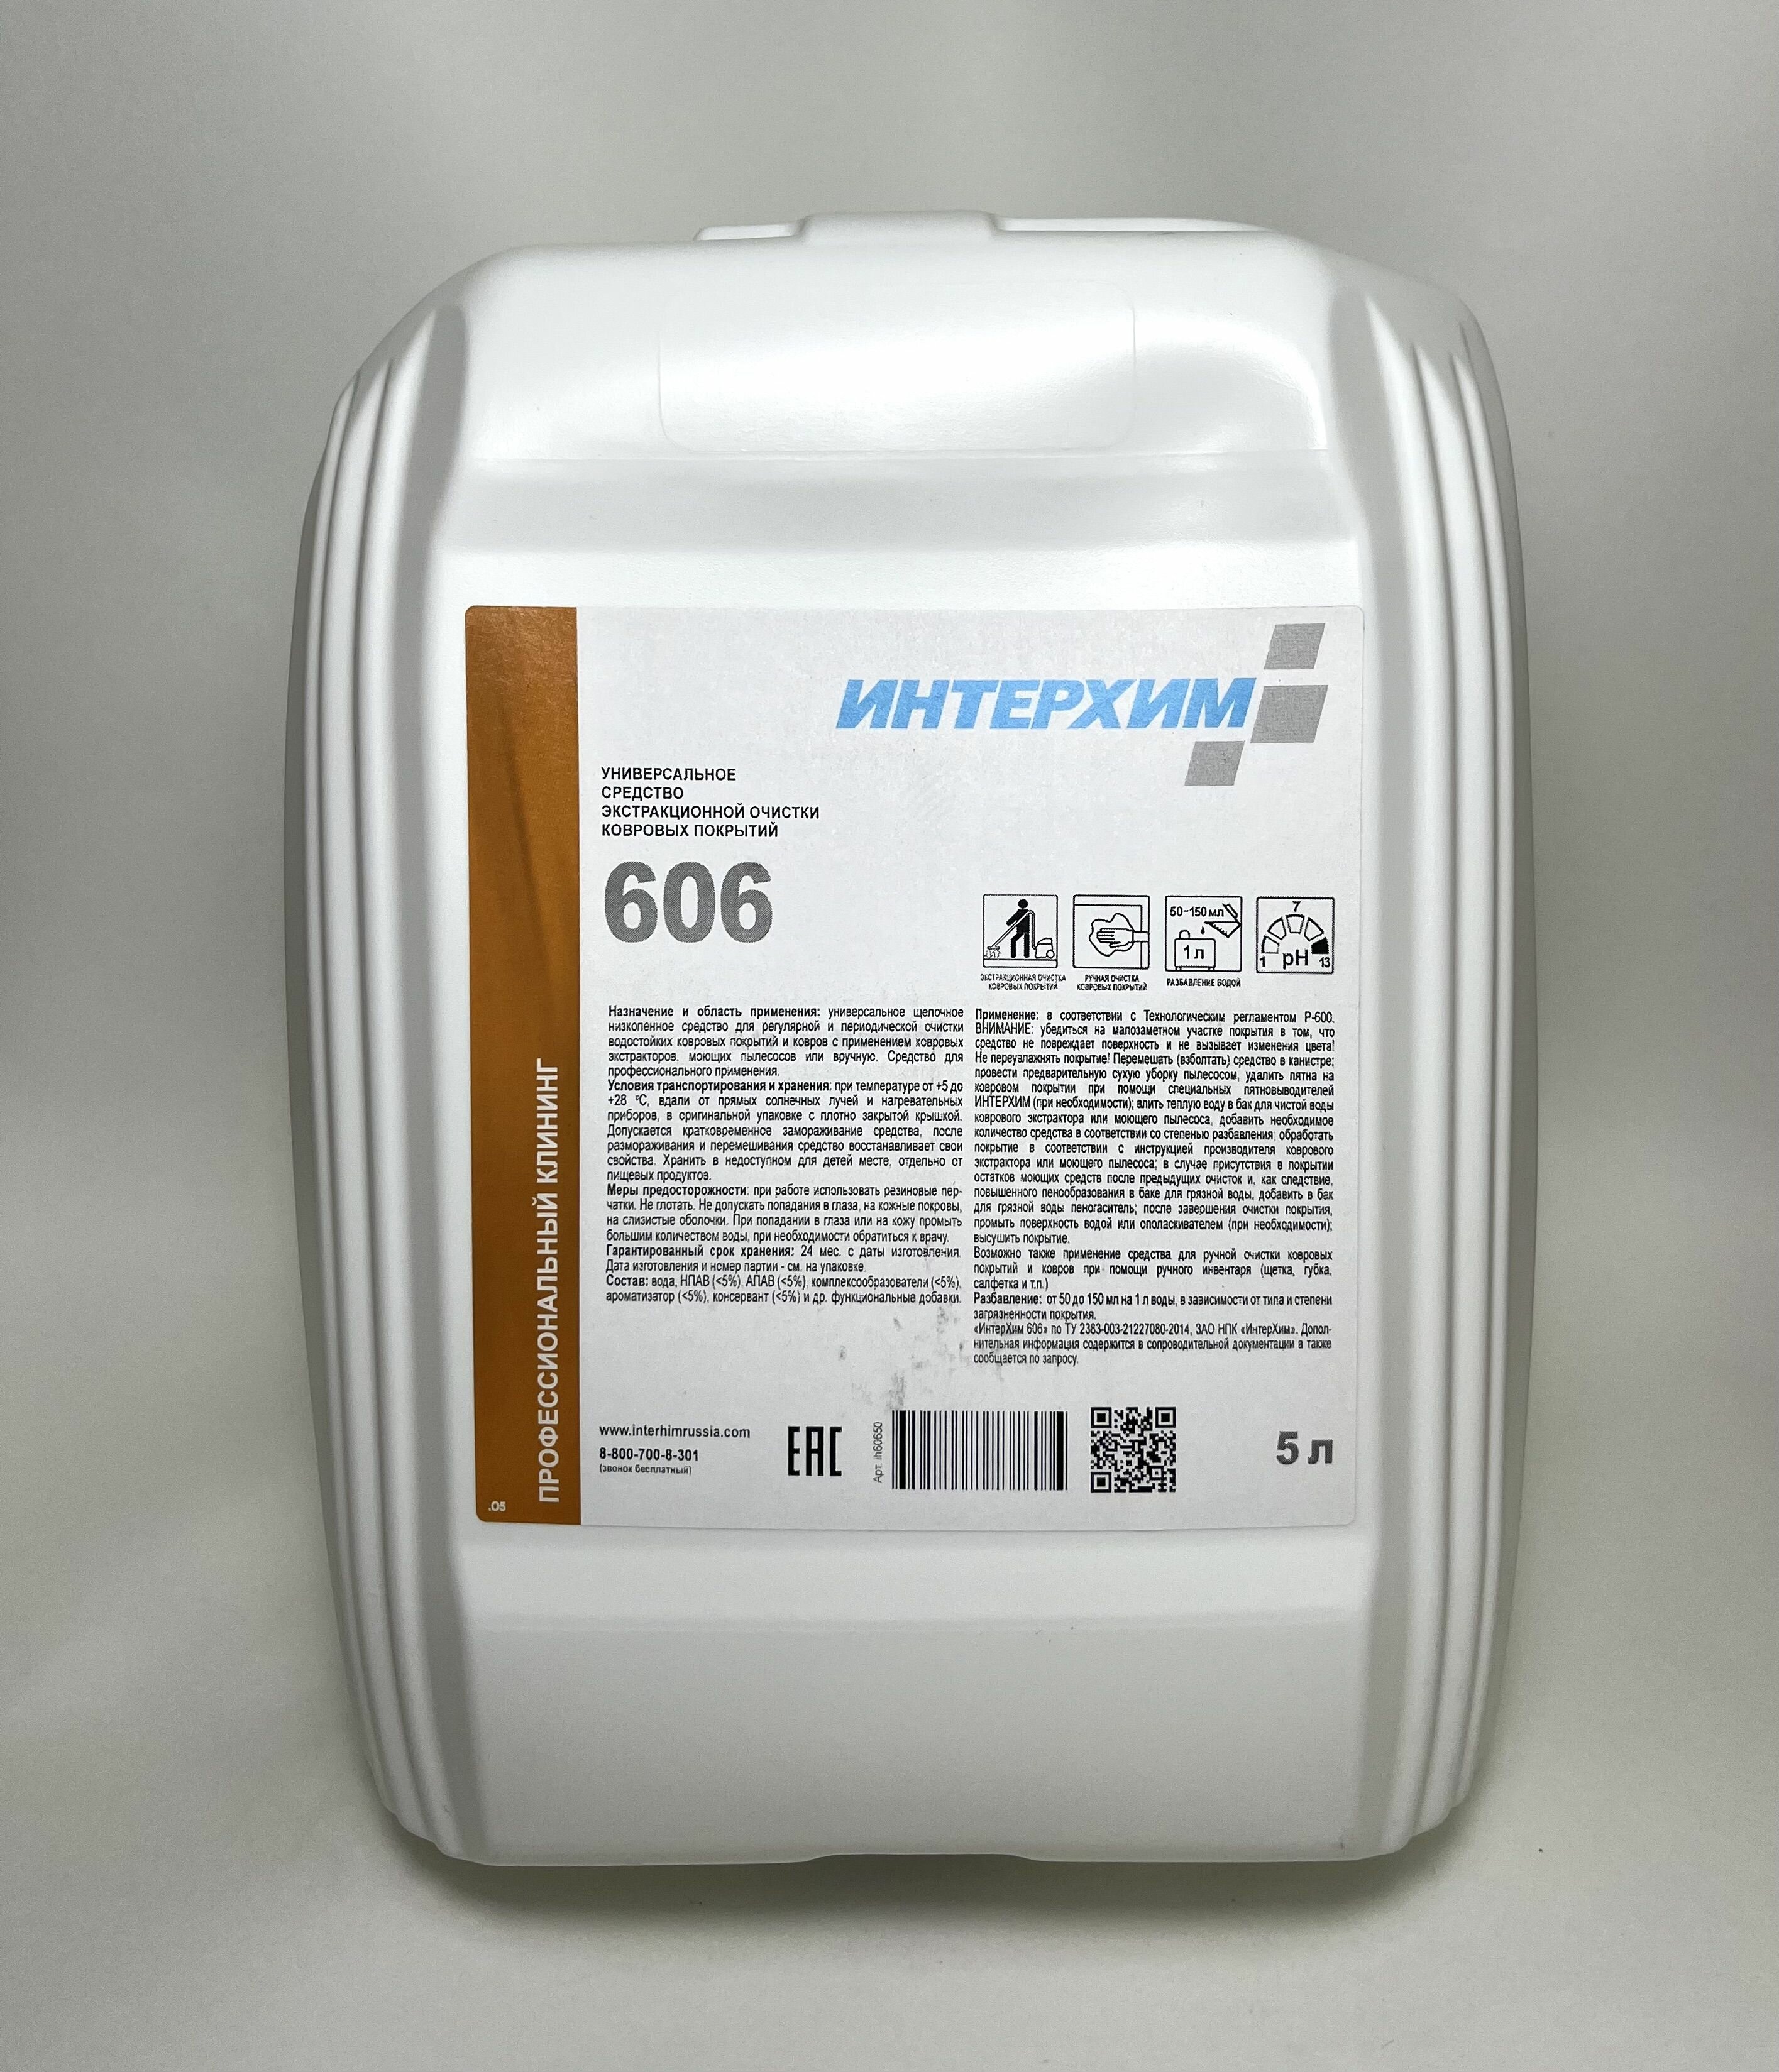 Интерхим 606 Универсальное средство экстракционной очистки ковров и ковровых покрытий 5 л.